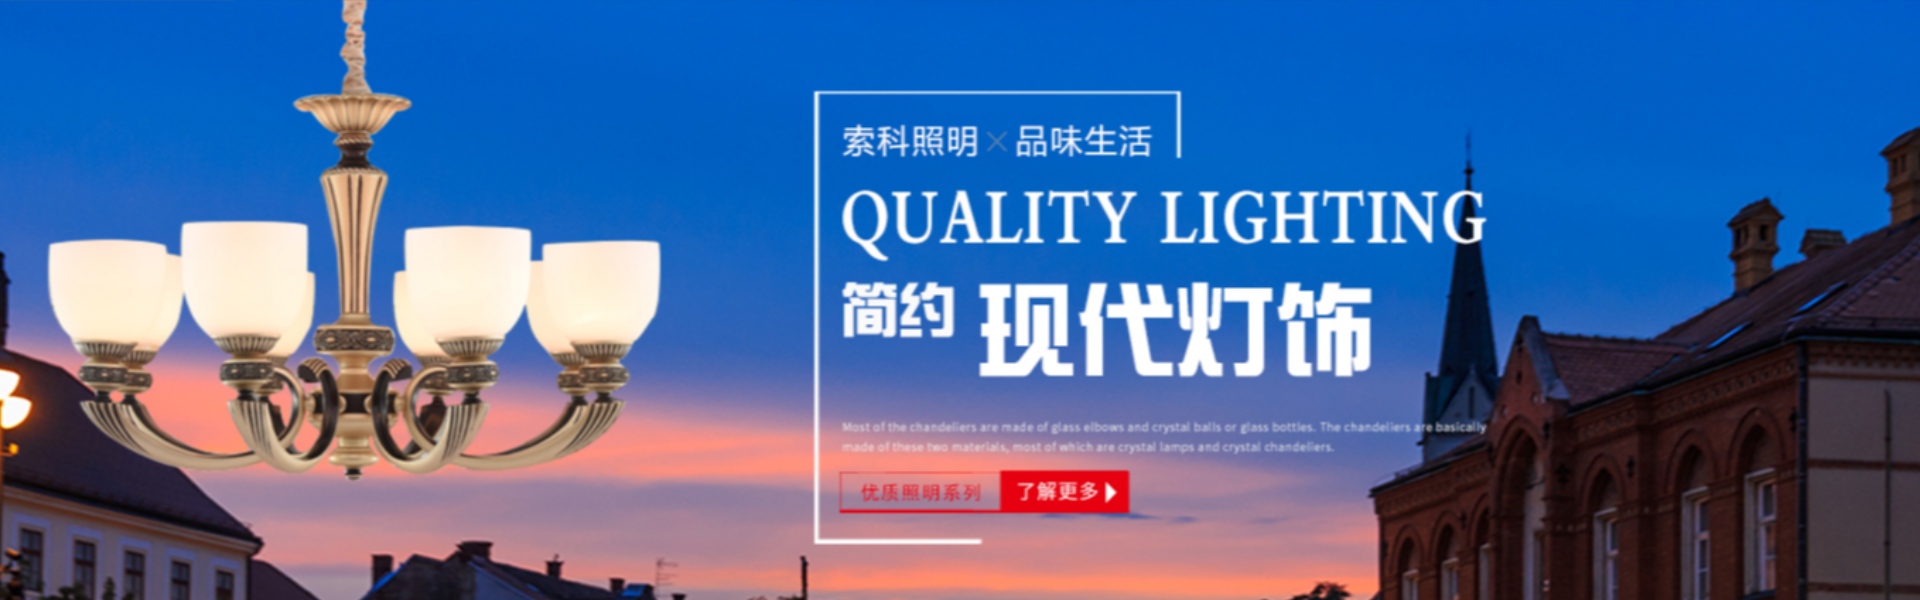 iluminação doméstica, iluminação externa, iluminação solar,Zhongshan Suoke Lighting Electric Co., Ltd.